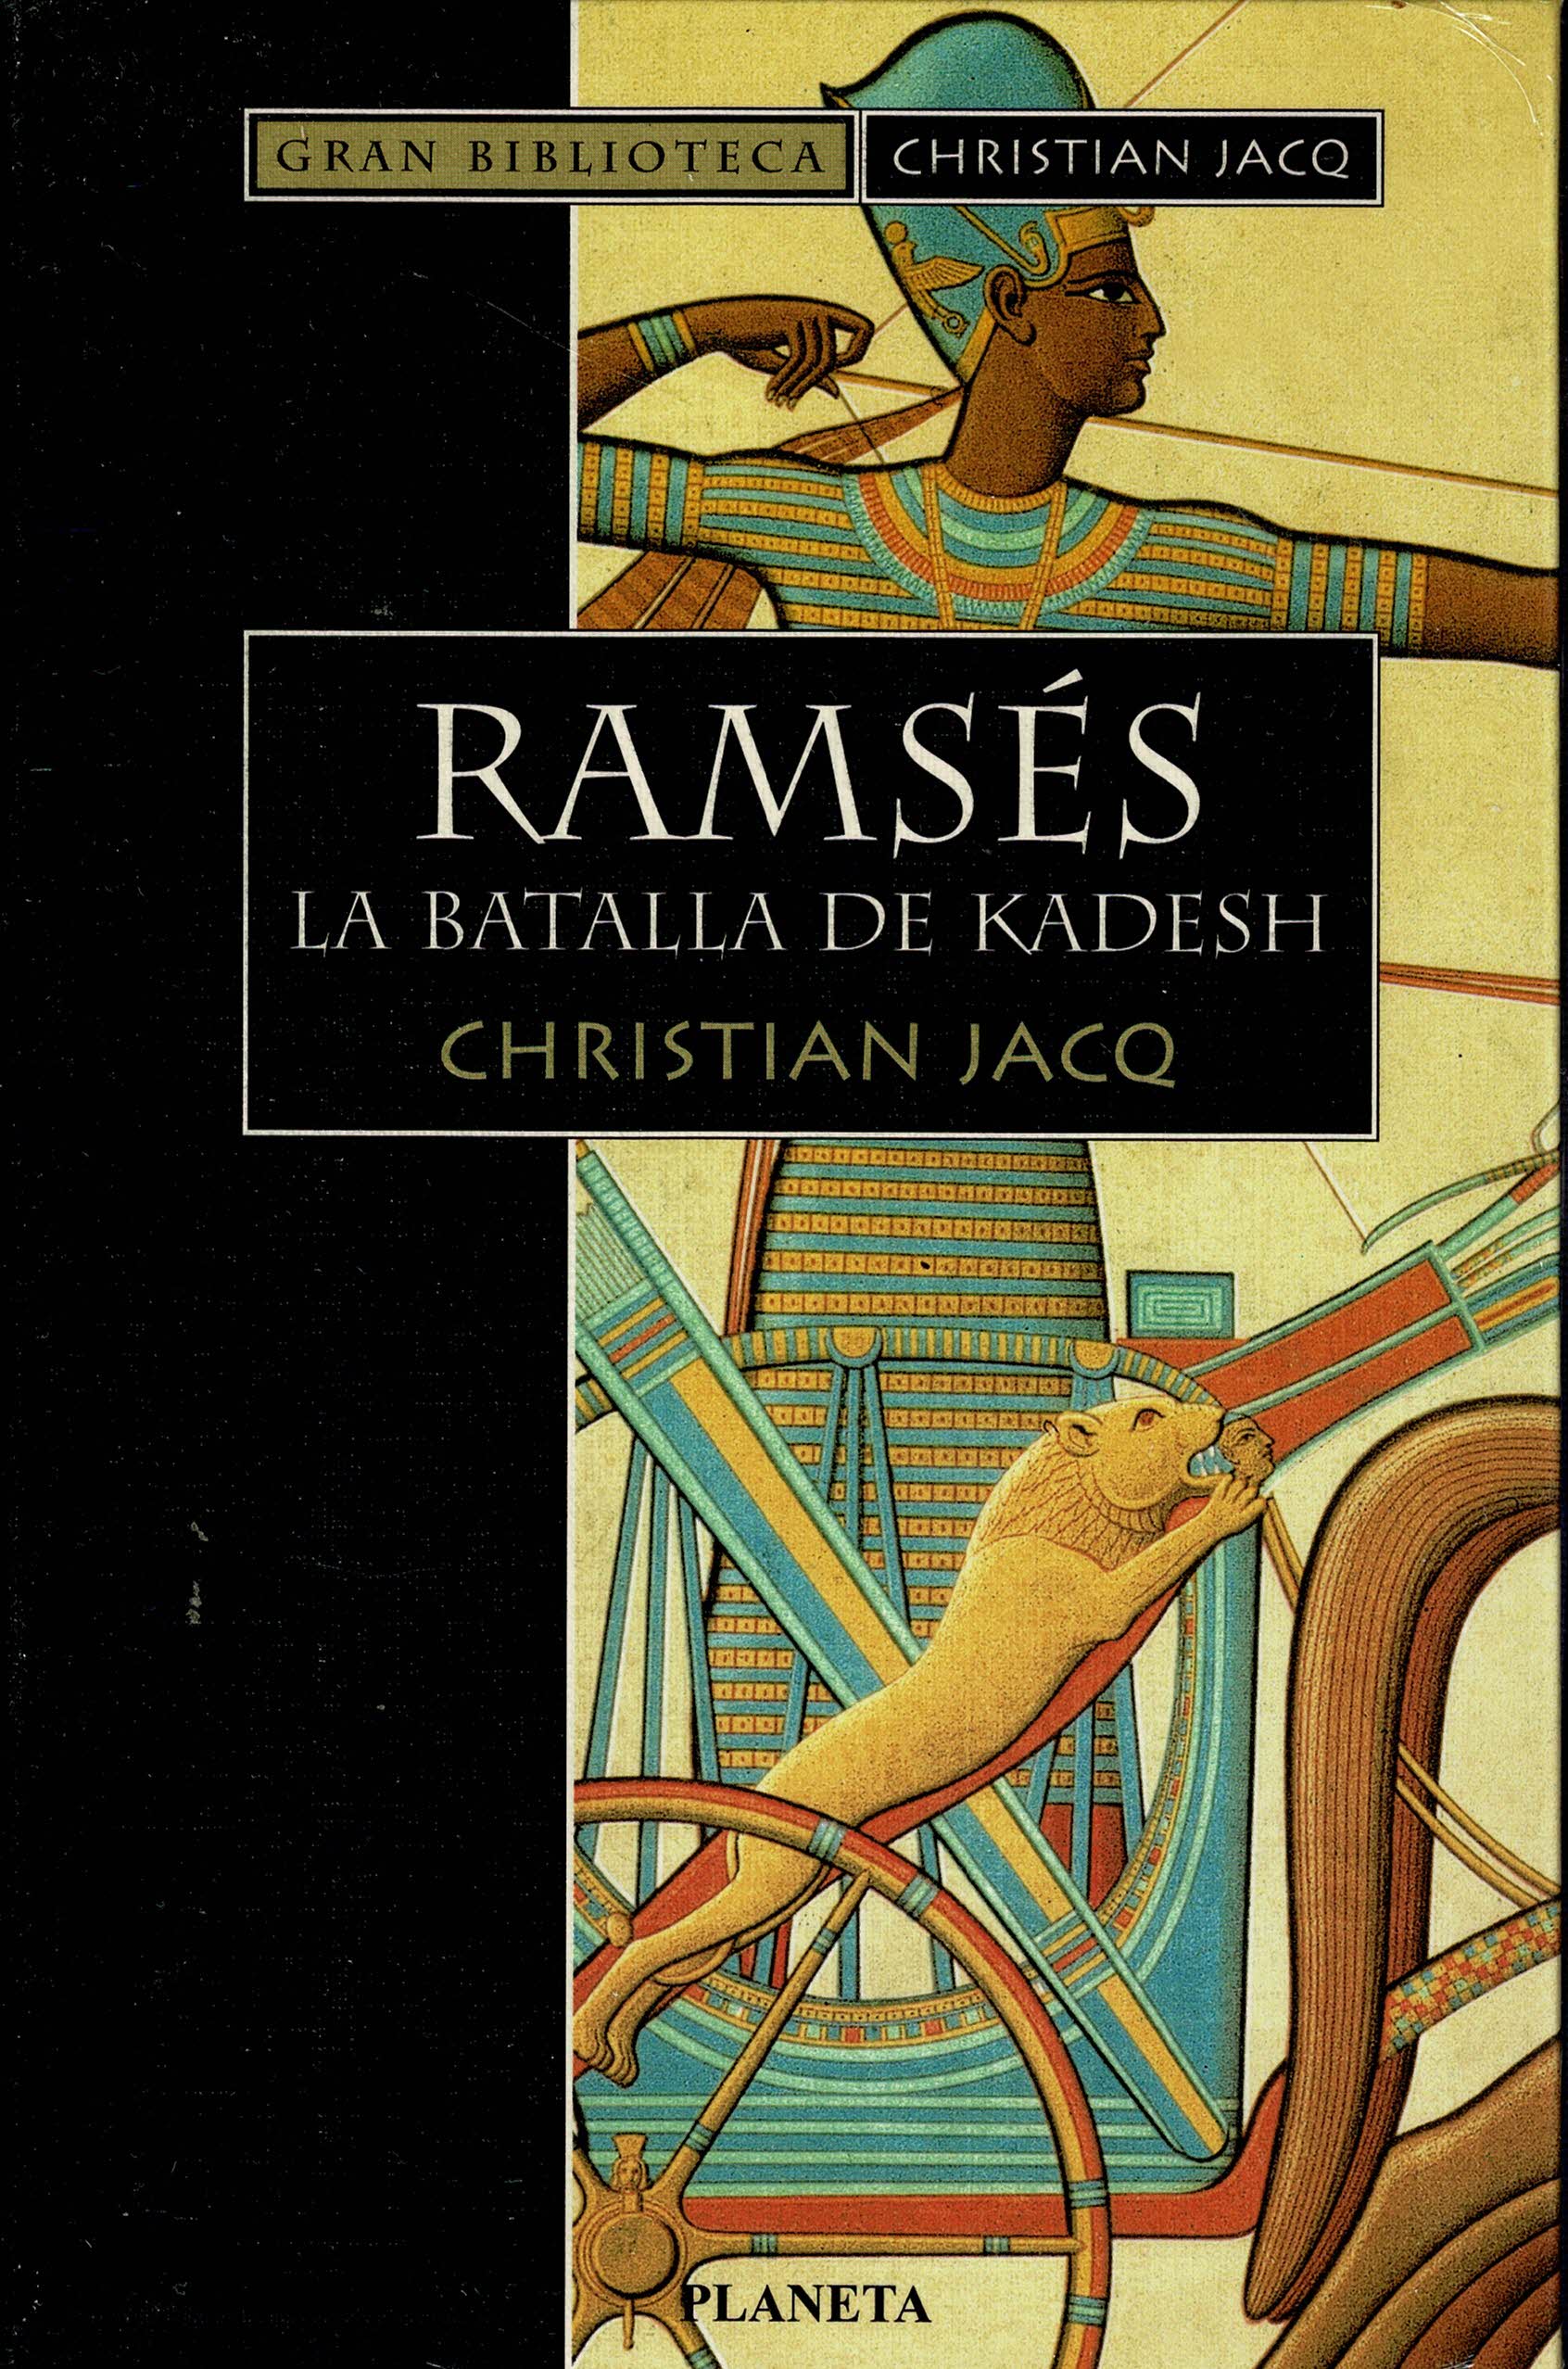 RAMSÉS ,La batalla de Kadesh (Christian Jacq)